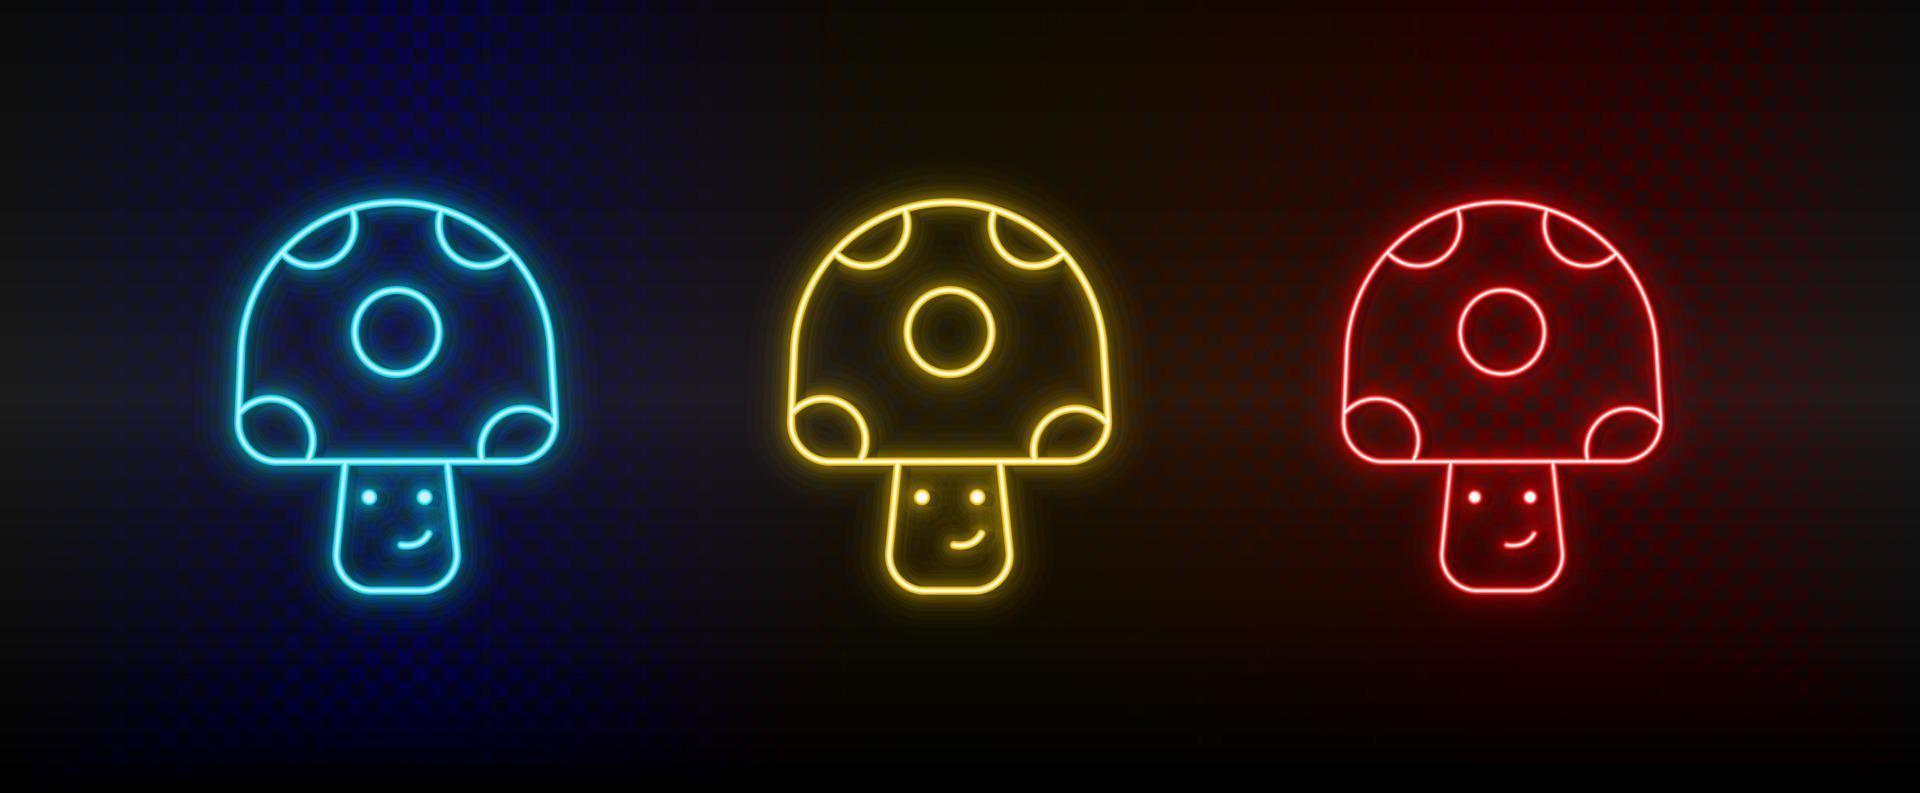 icônes au néon. arcade rétro champignon de jeu vidéo. ensemble d'icônes vectorielles néon rouge, bleu, jaune sur fond sombre vecteur